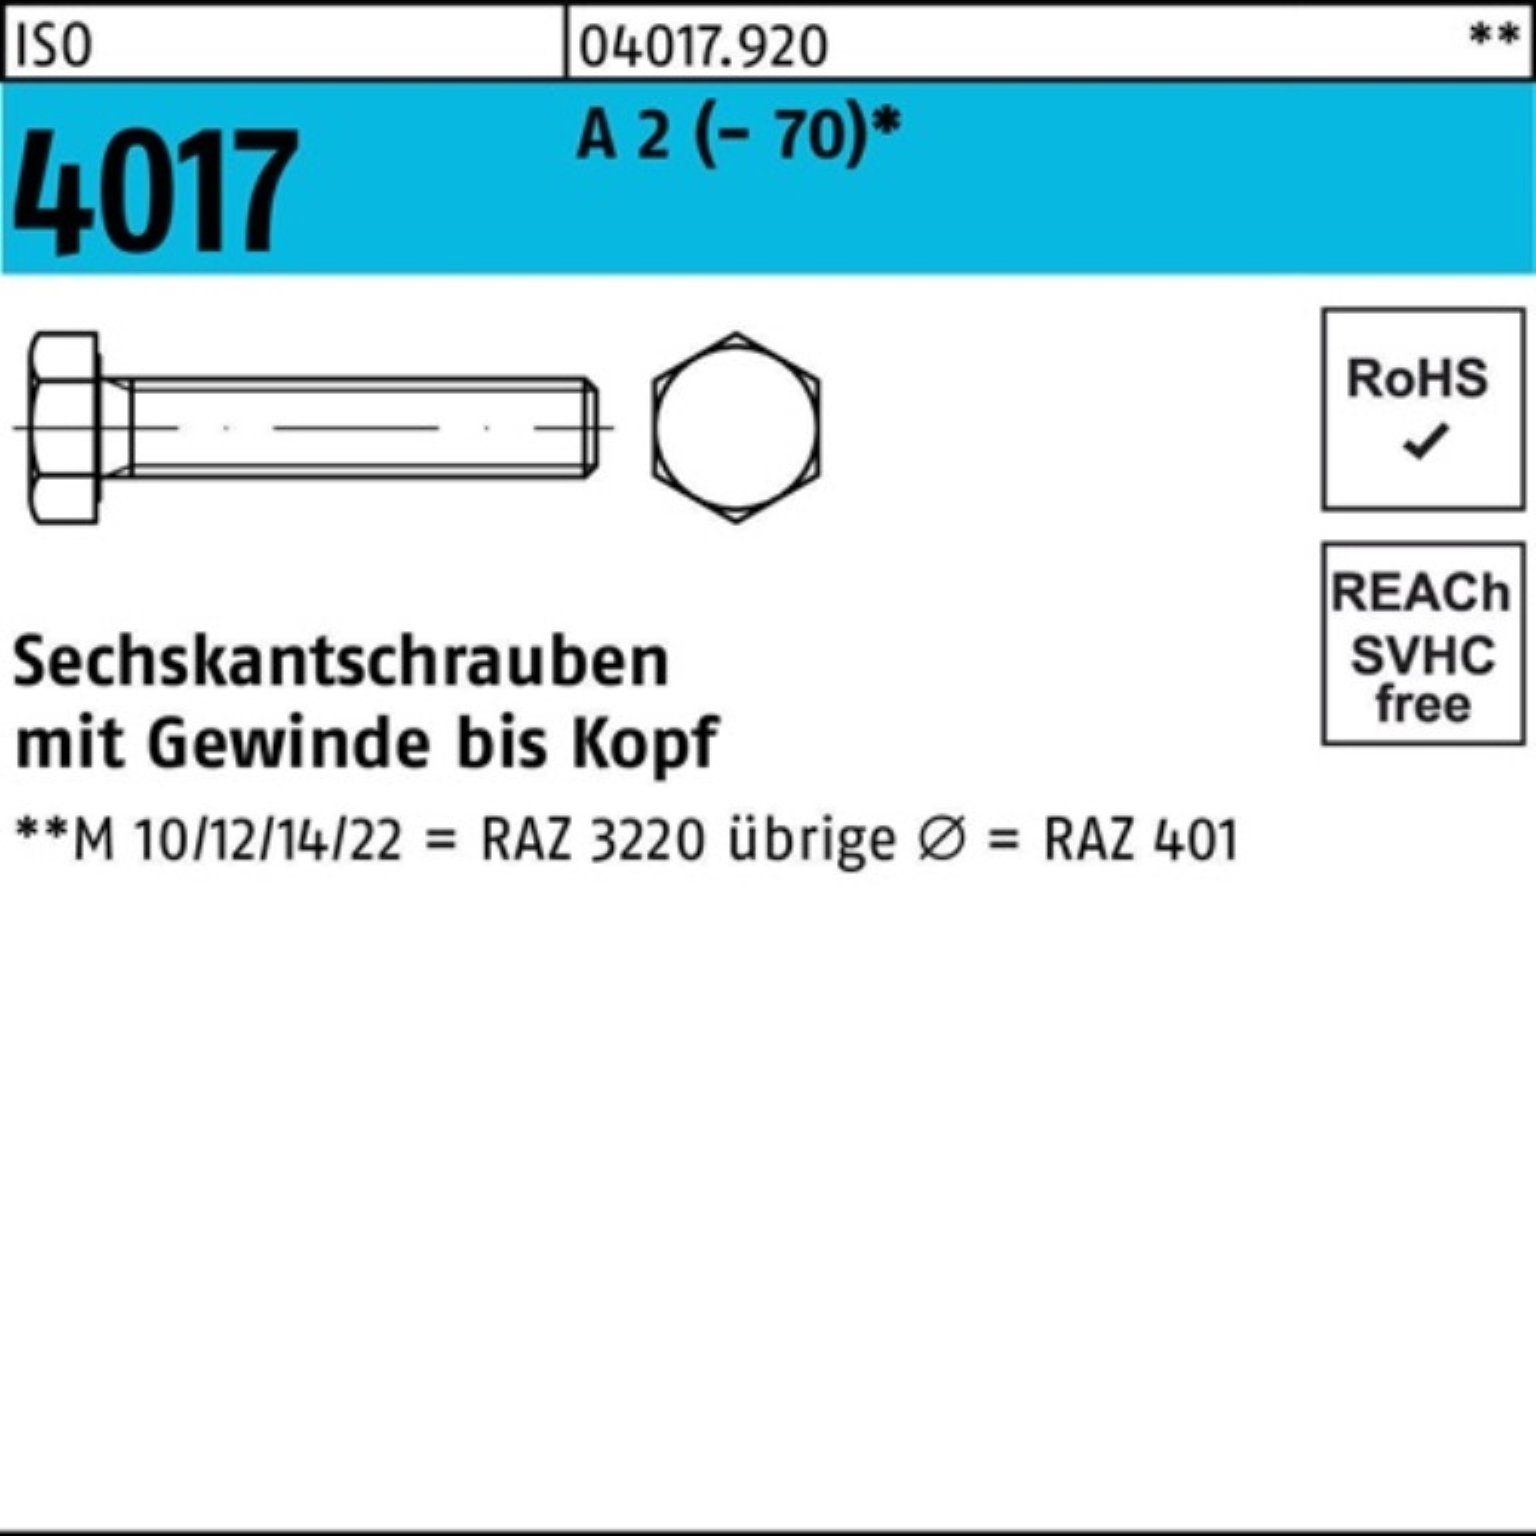 Bufab Sechskantschraube 100er Pack Sechskantschraube 2 ISO (70) M12x 100 VG A 45 Stück 4017